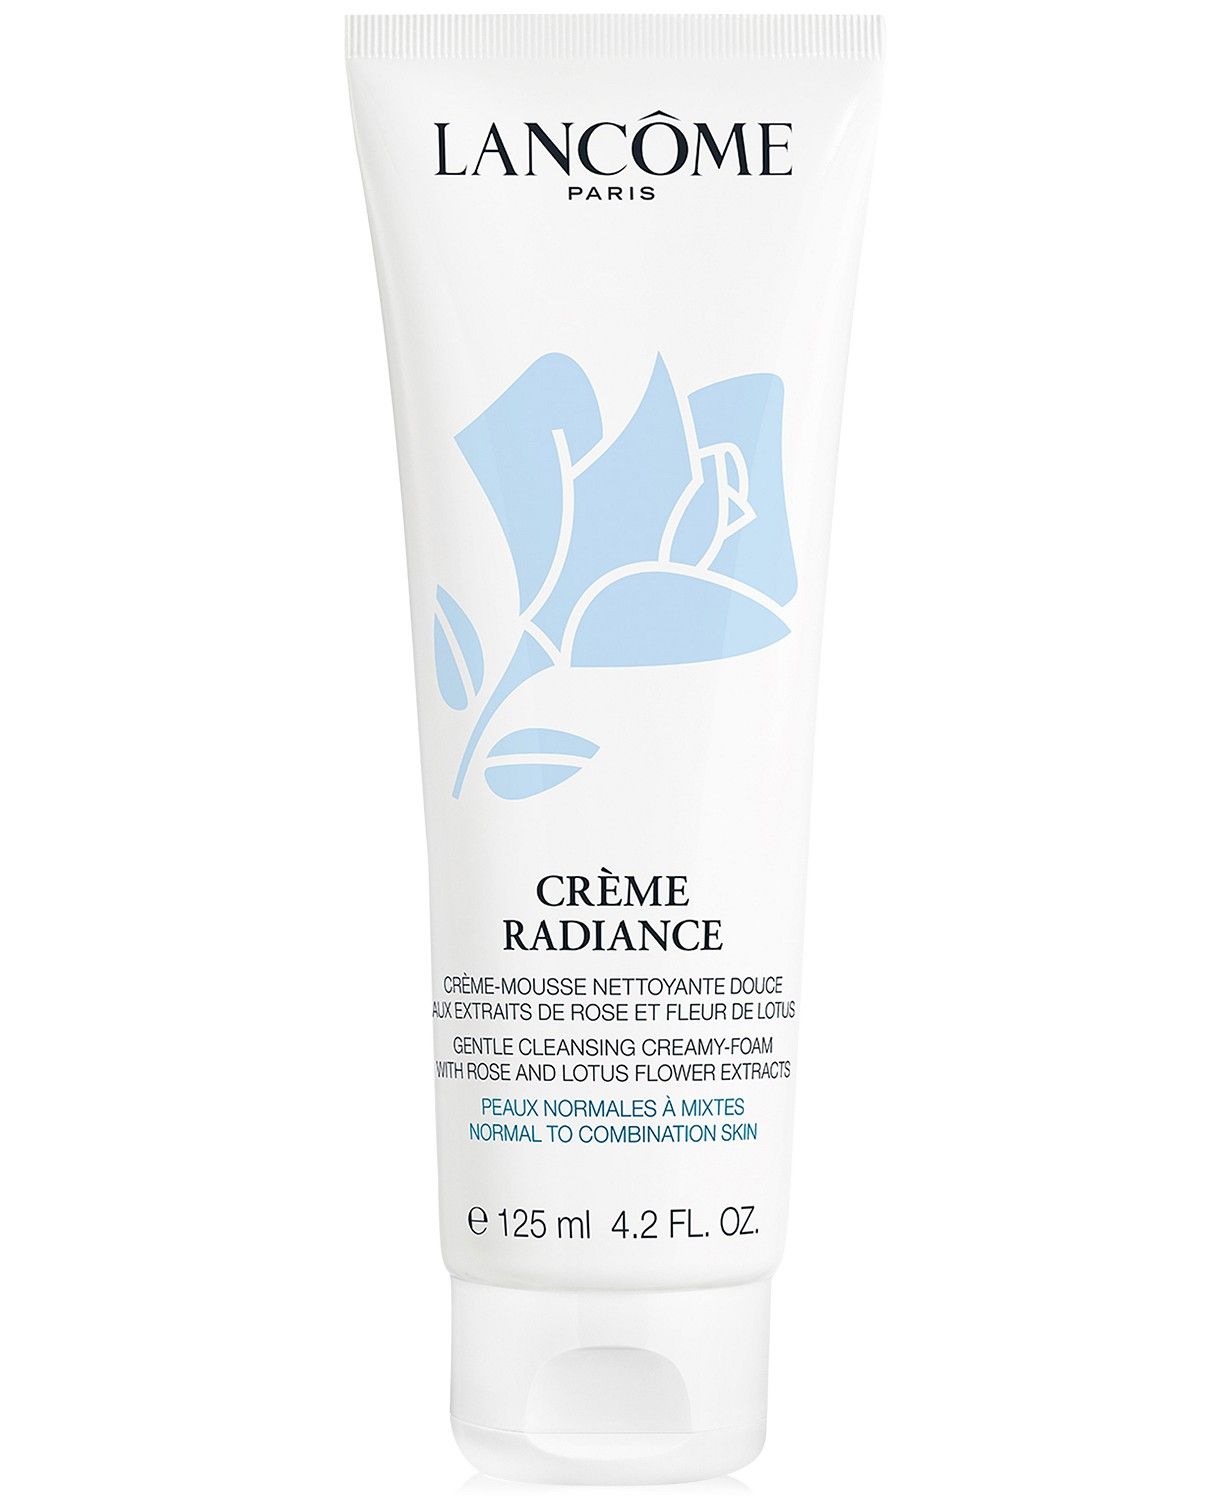 Lancôme Crème Radiance Clarifying Cream-to-Foam Cleanser, 4.2. fl oz. & Reviews - Makeup - Beau... | Macys (US)